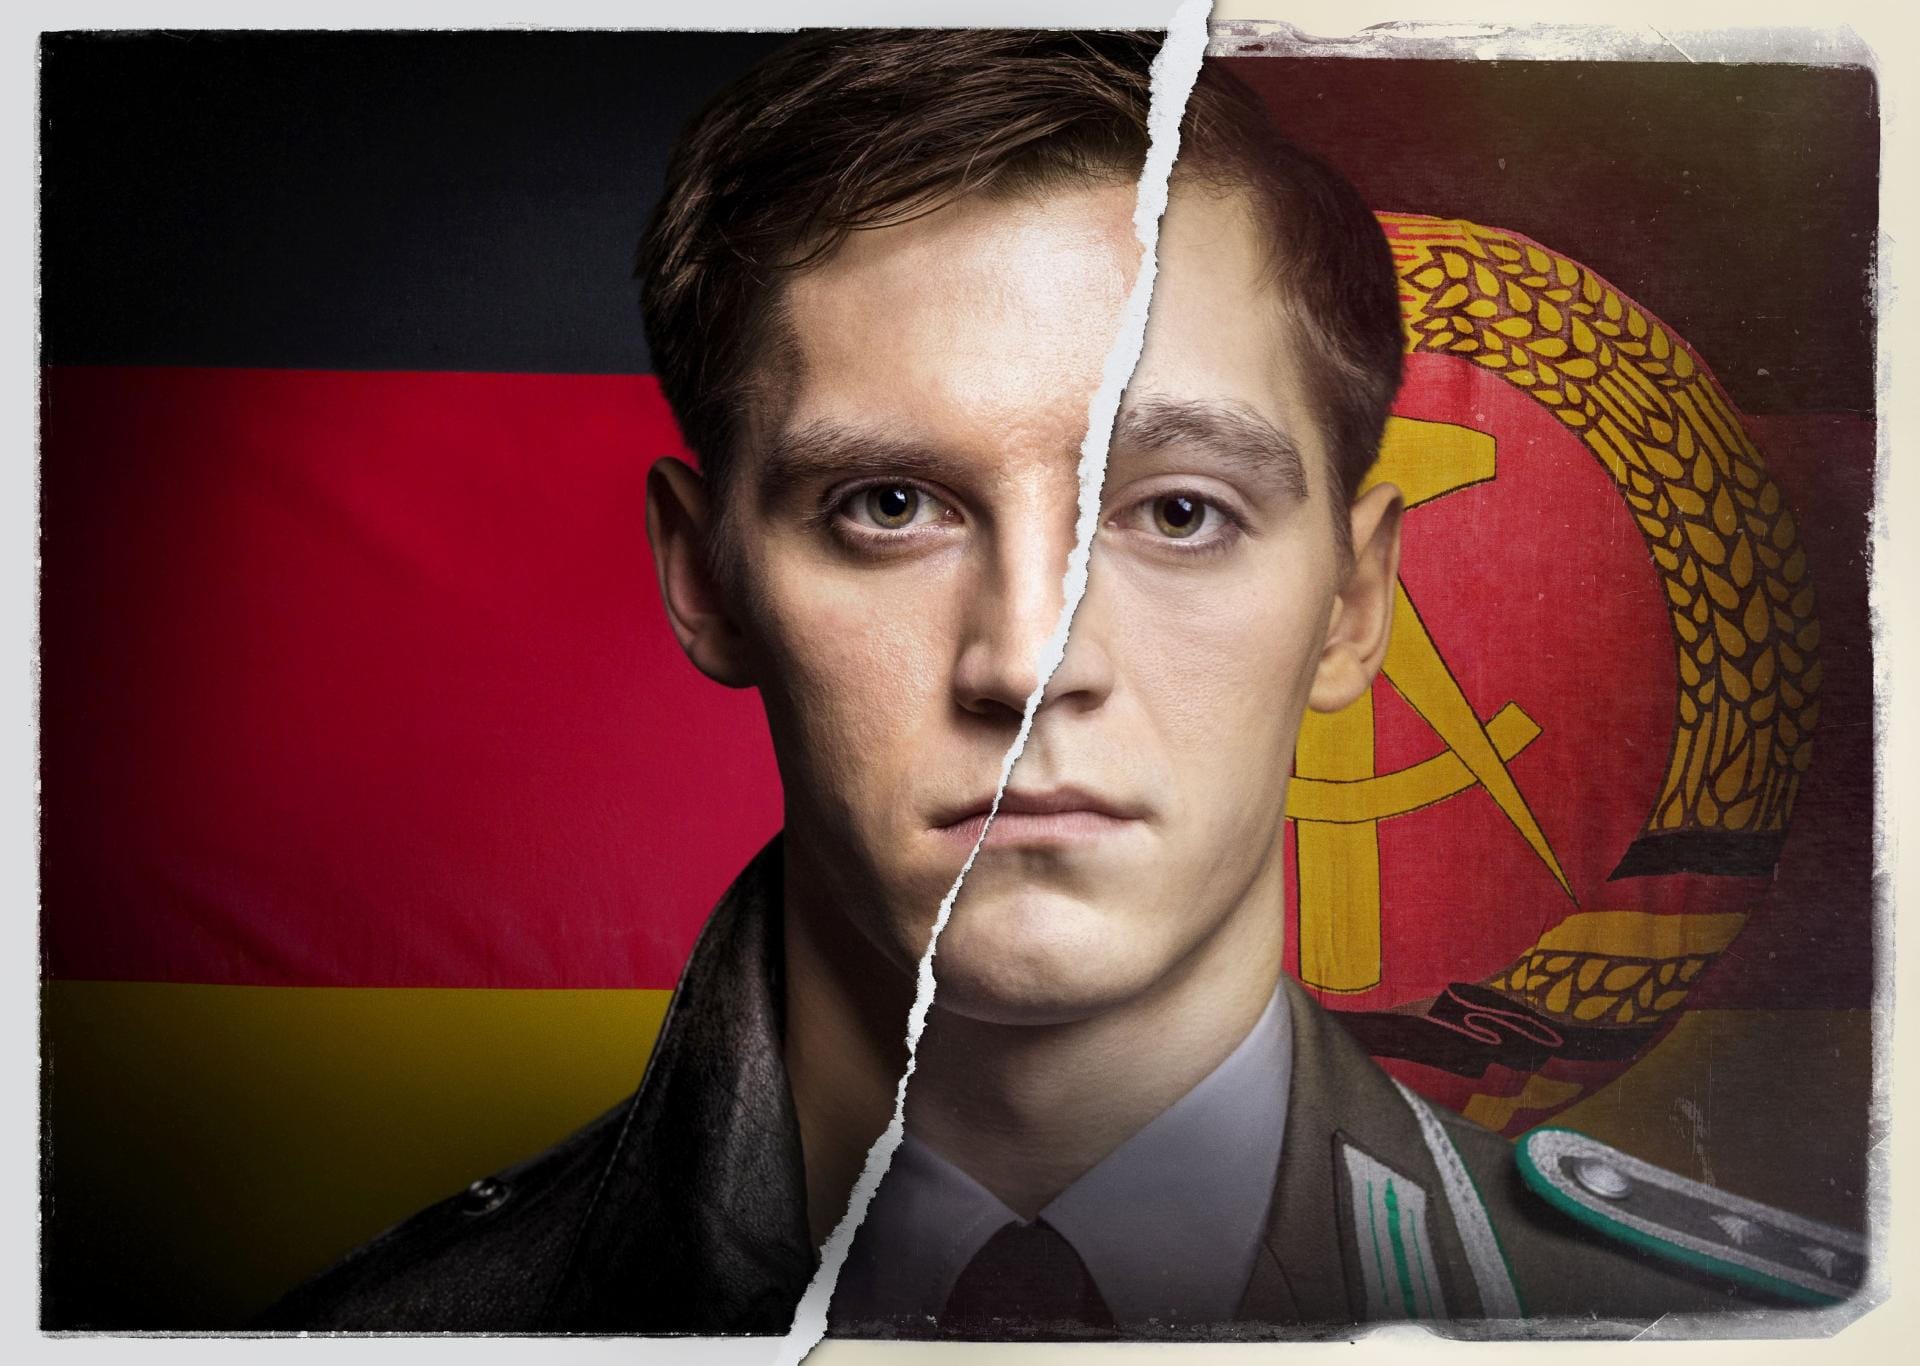 Jonas Nay spielt die Hauptfigur in der sehenswerten RTL-Serie "Deutschland 83". Vom DDR-Oberfeldwebel Martin Rauch wird er zum BRD-Oberleutnant Moritz Stamm.